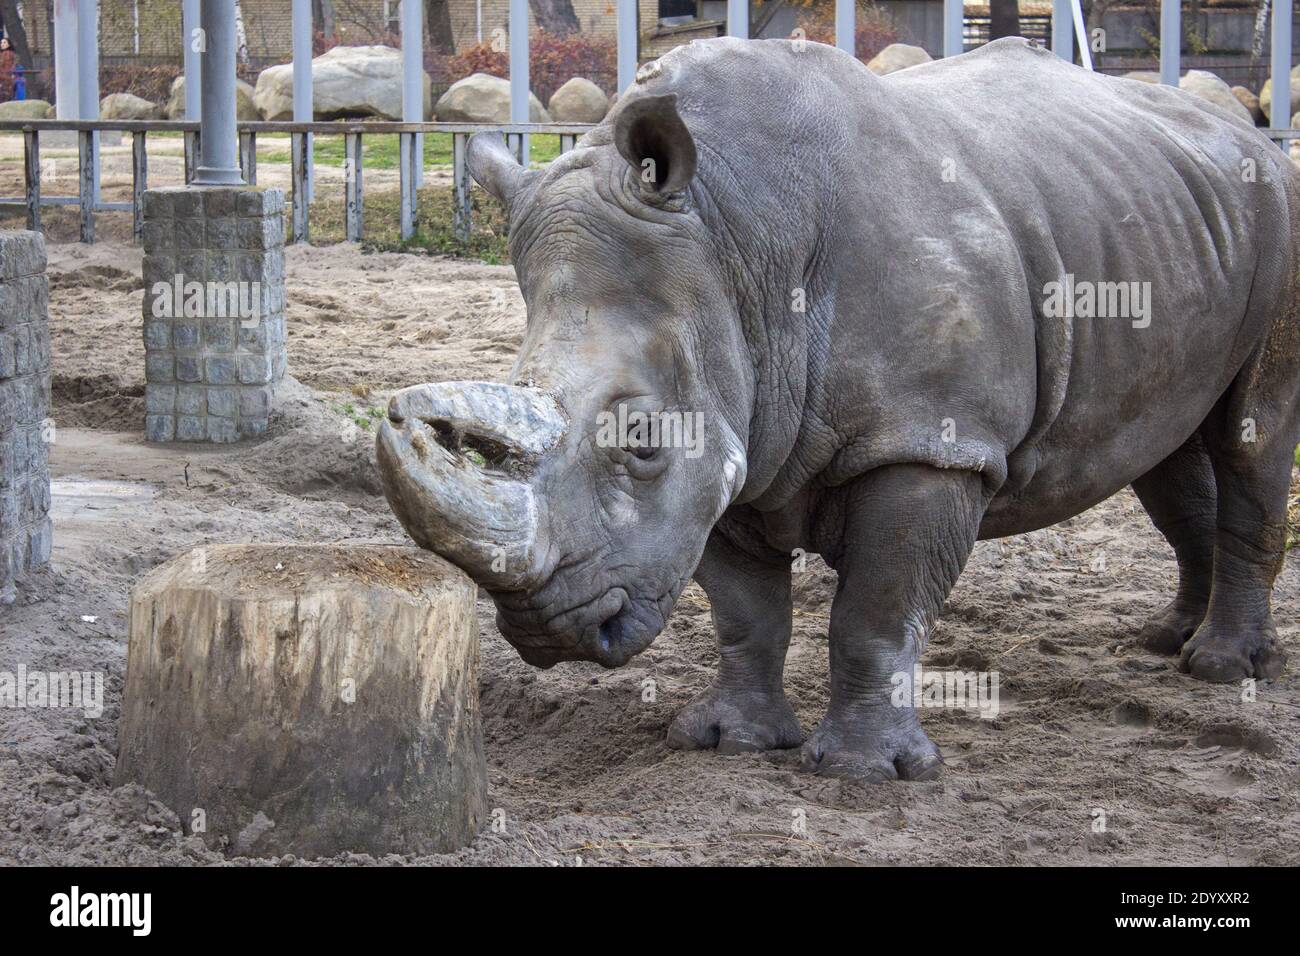 Rhino reibt sein Horn gegen einen Baumstumpf. Hochwertige Fotos Stockfoto